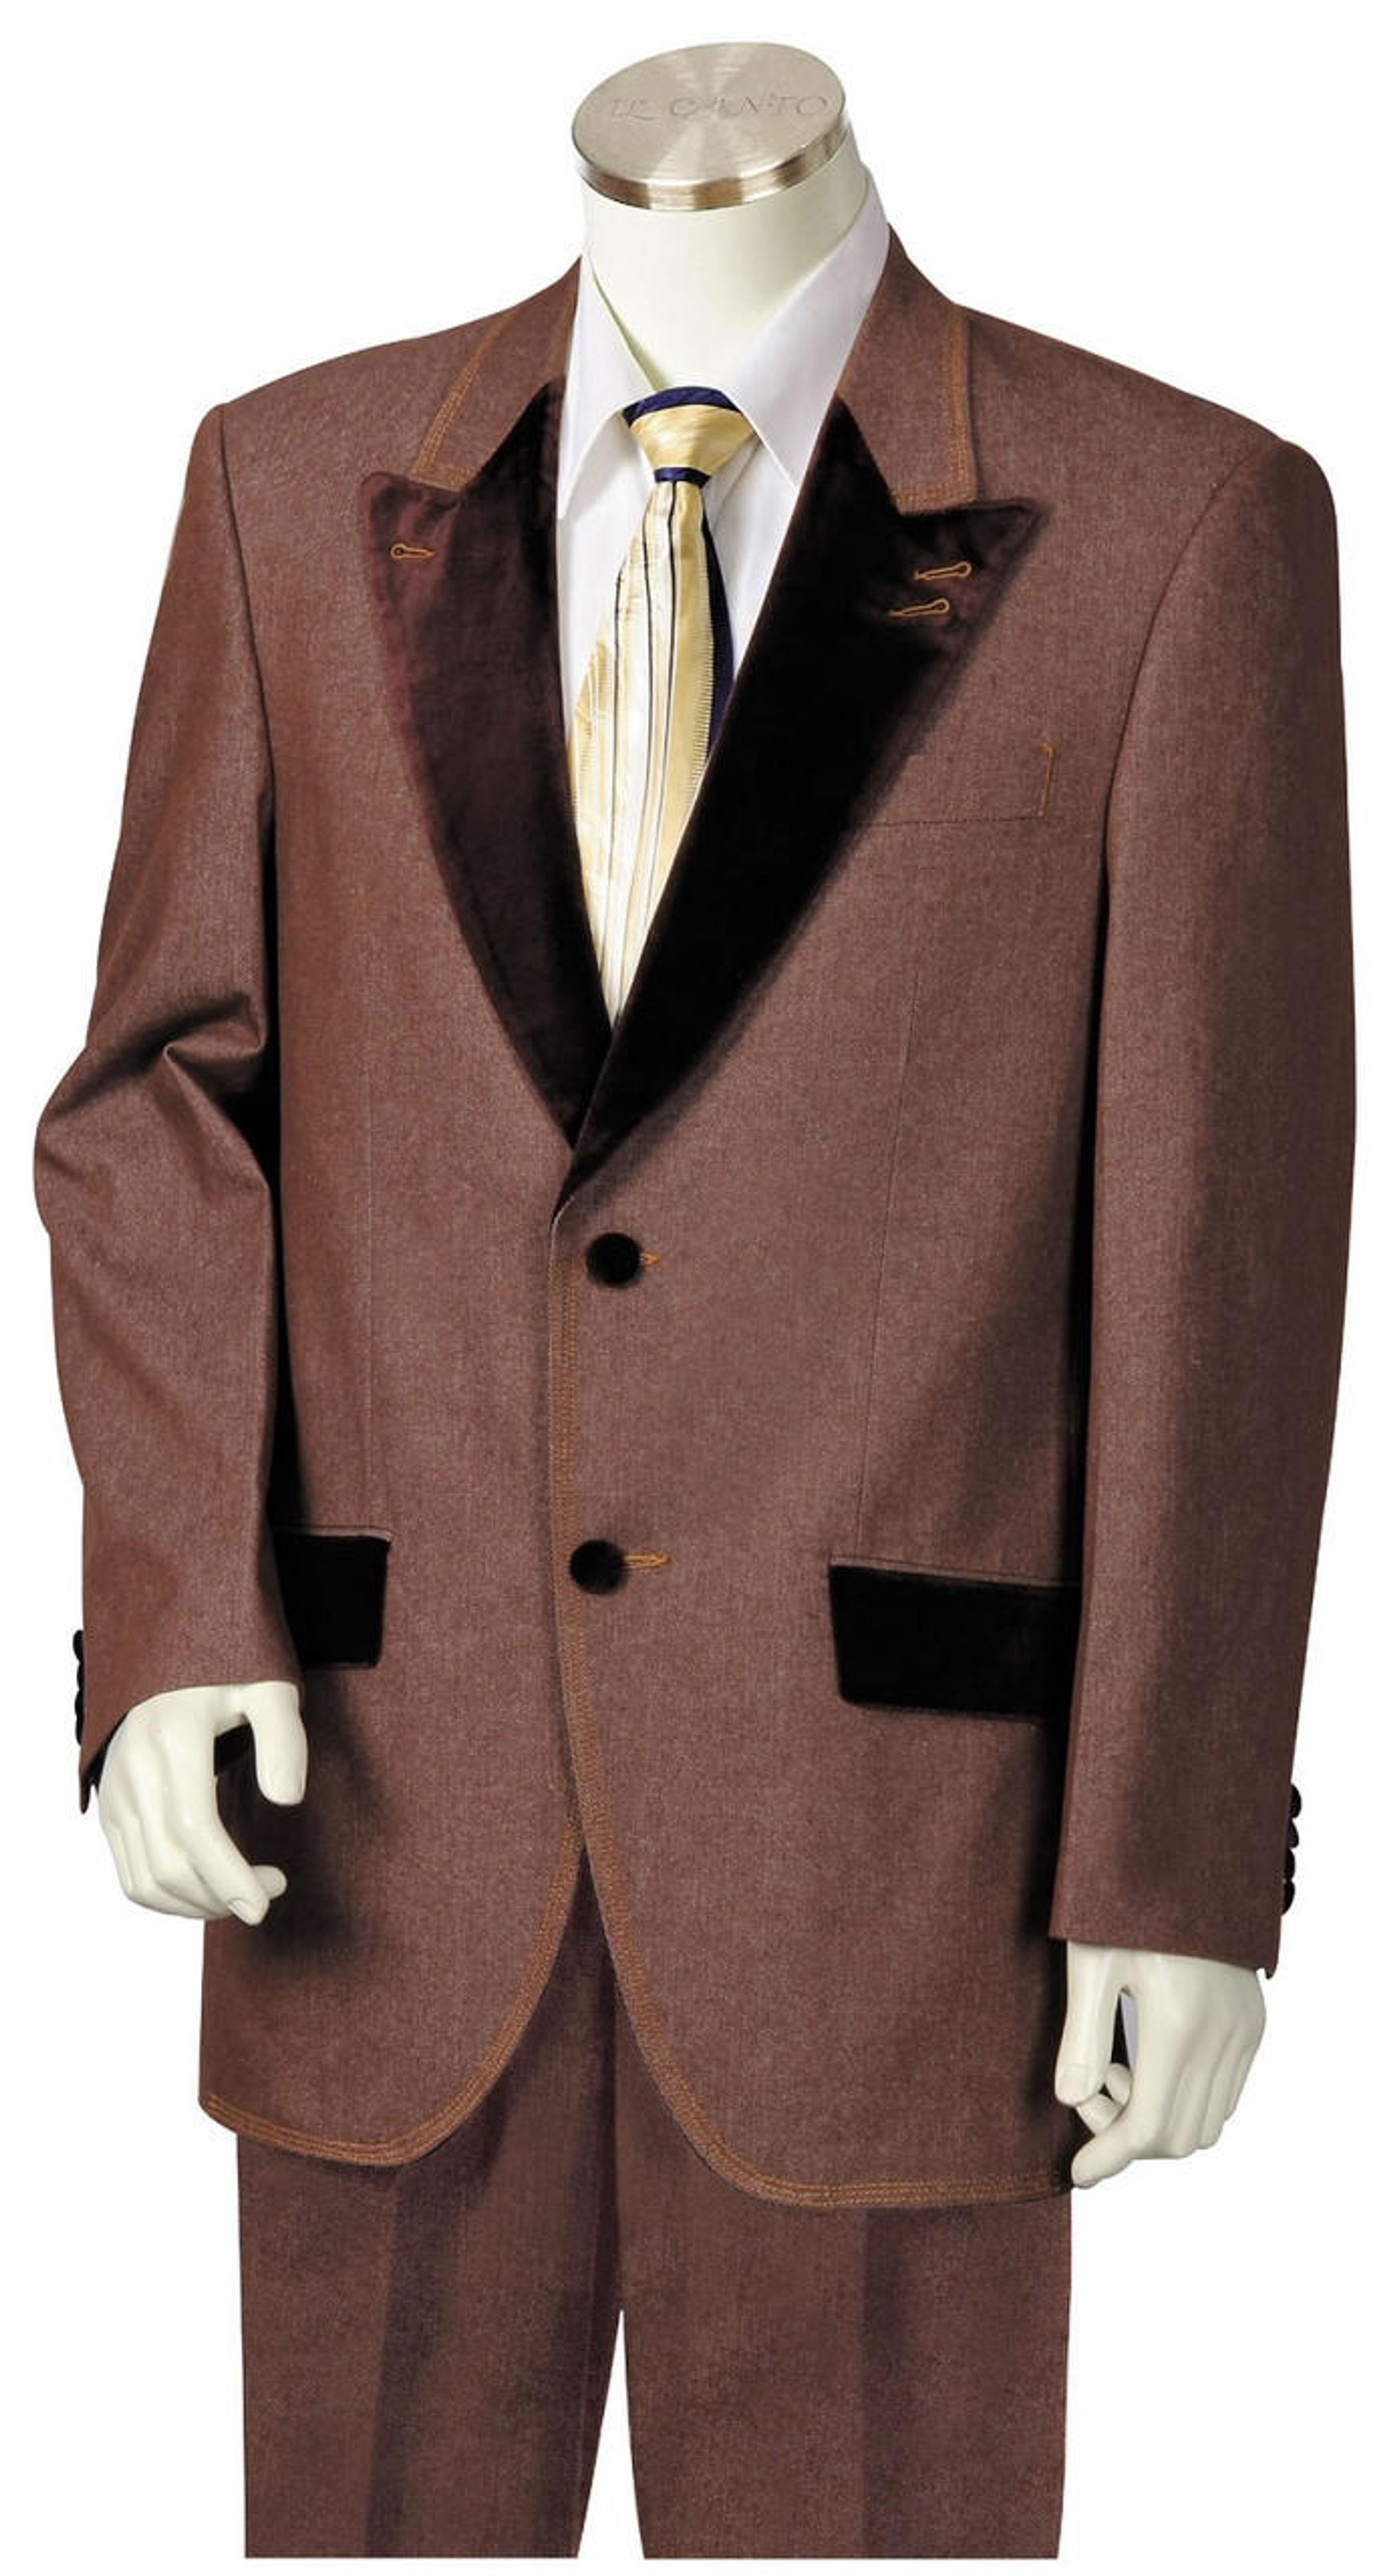 Mens Fashion Suits | Affordable Stylish Suit | ContempoSuits